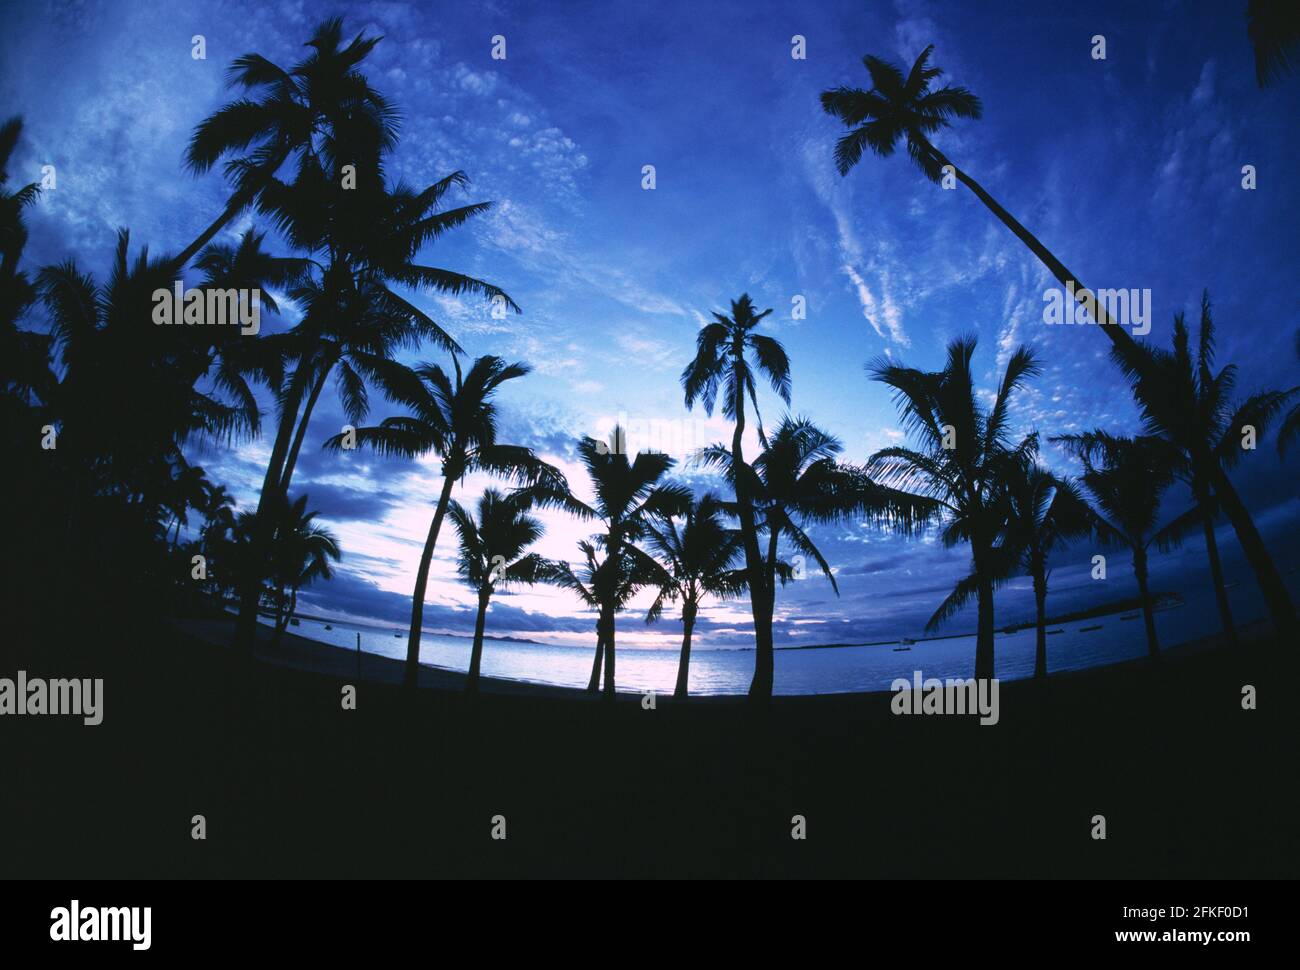 Fidji. Plage avec palmiers à noix de coco silhouettés contre le ciel du soir. Banque D'Images